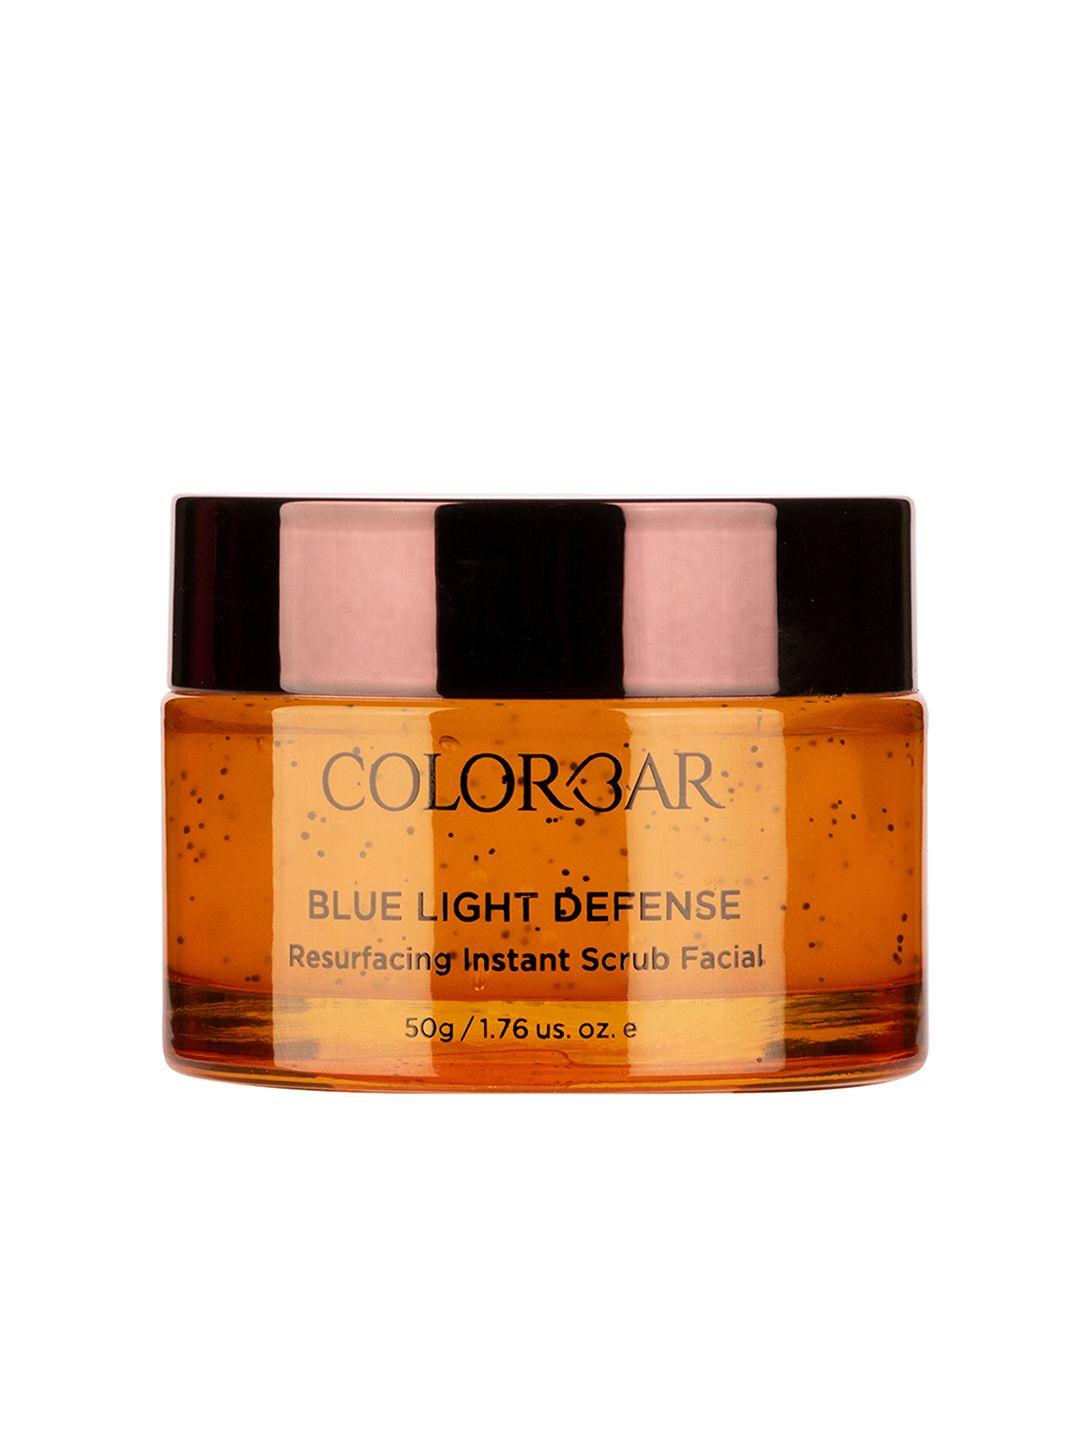 colorbar blue light defense resurfacing instant scrub facial - 50g